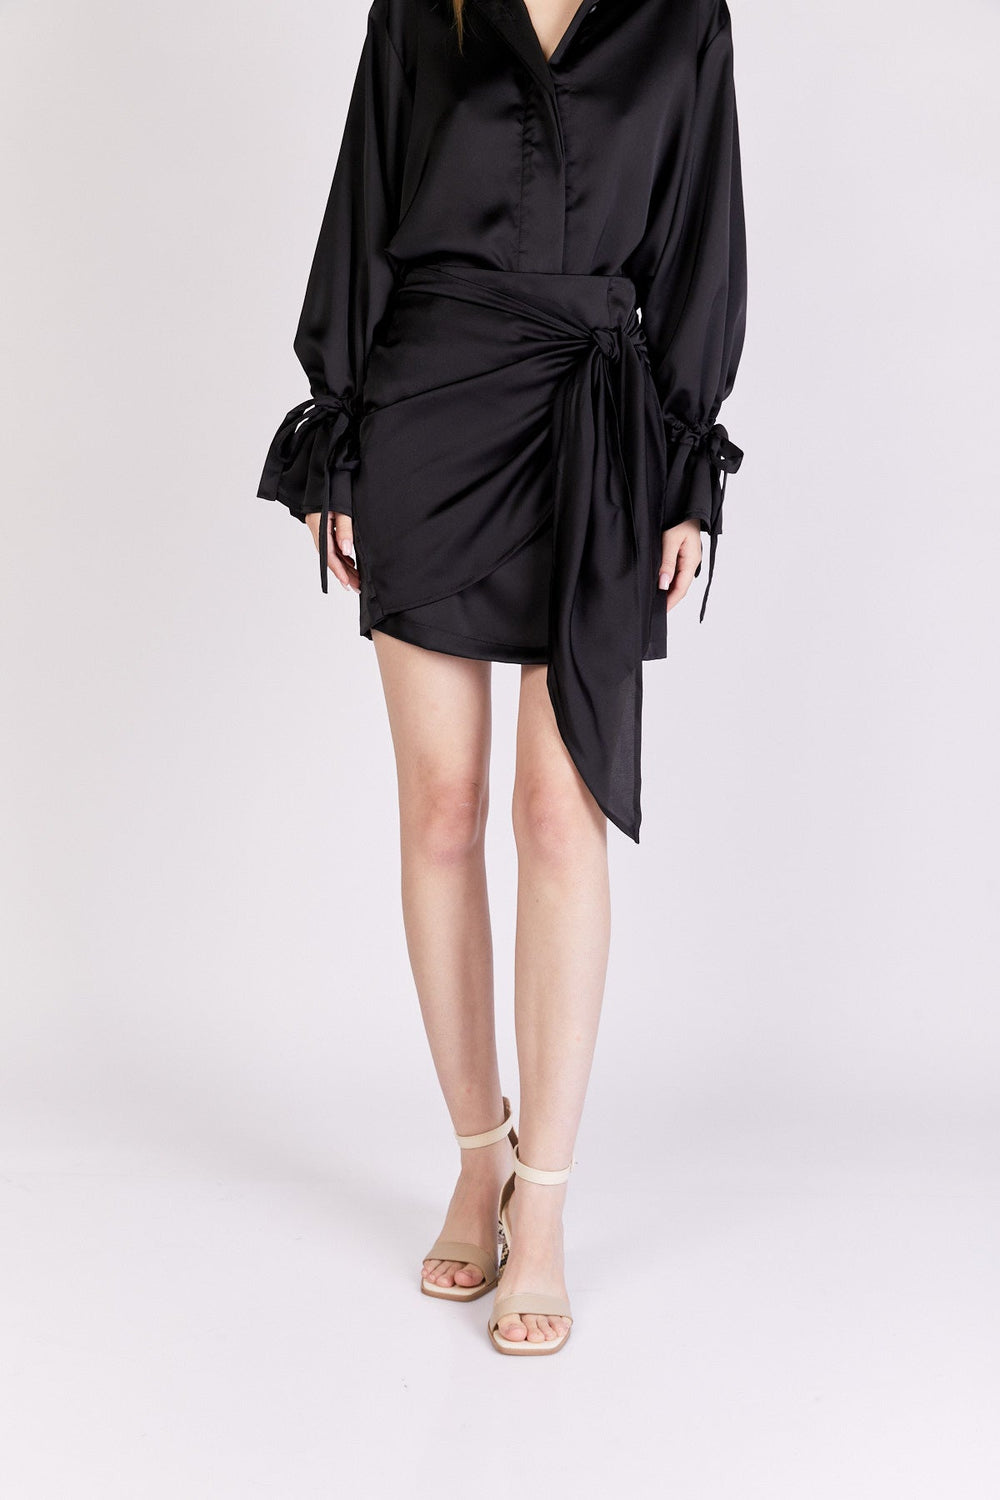 חצאית אלדן בצבע שחור - Dana Sidi